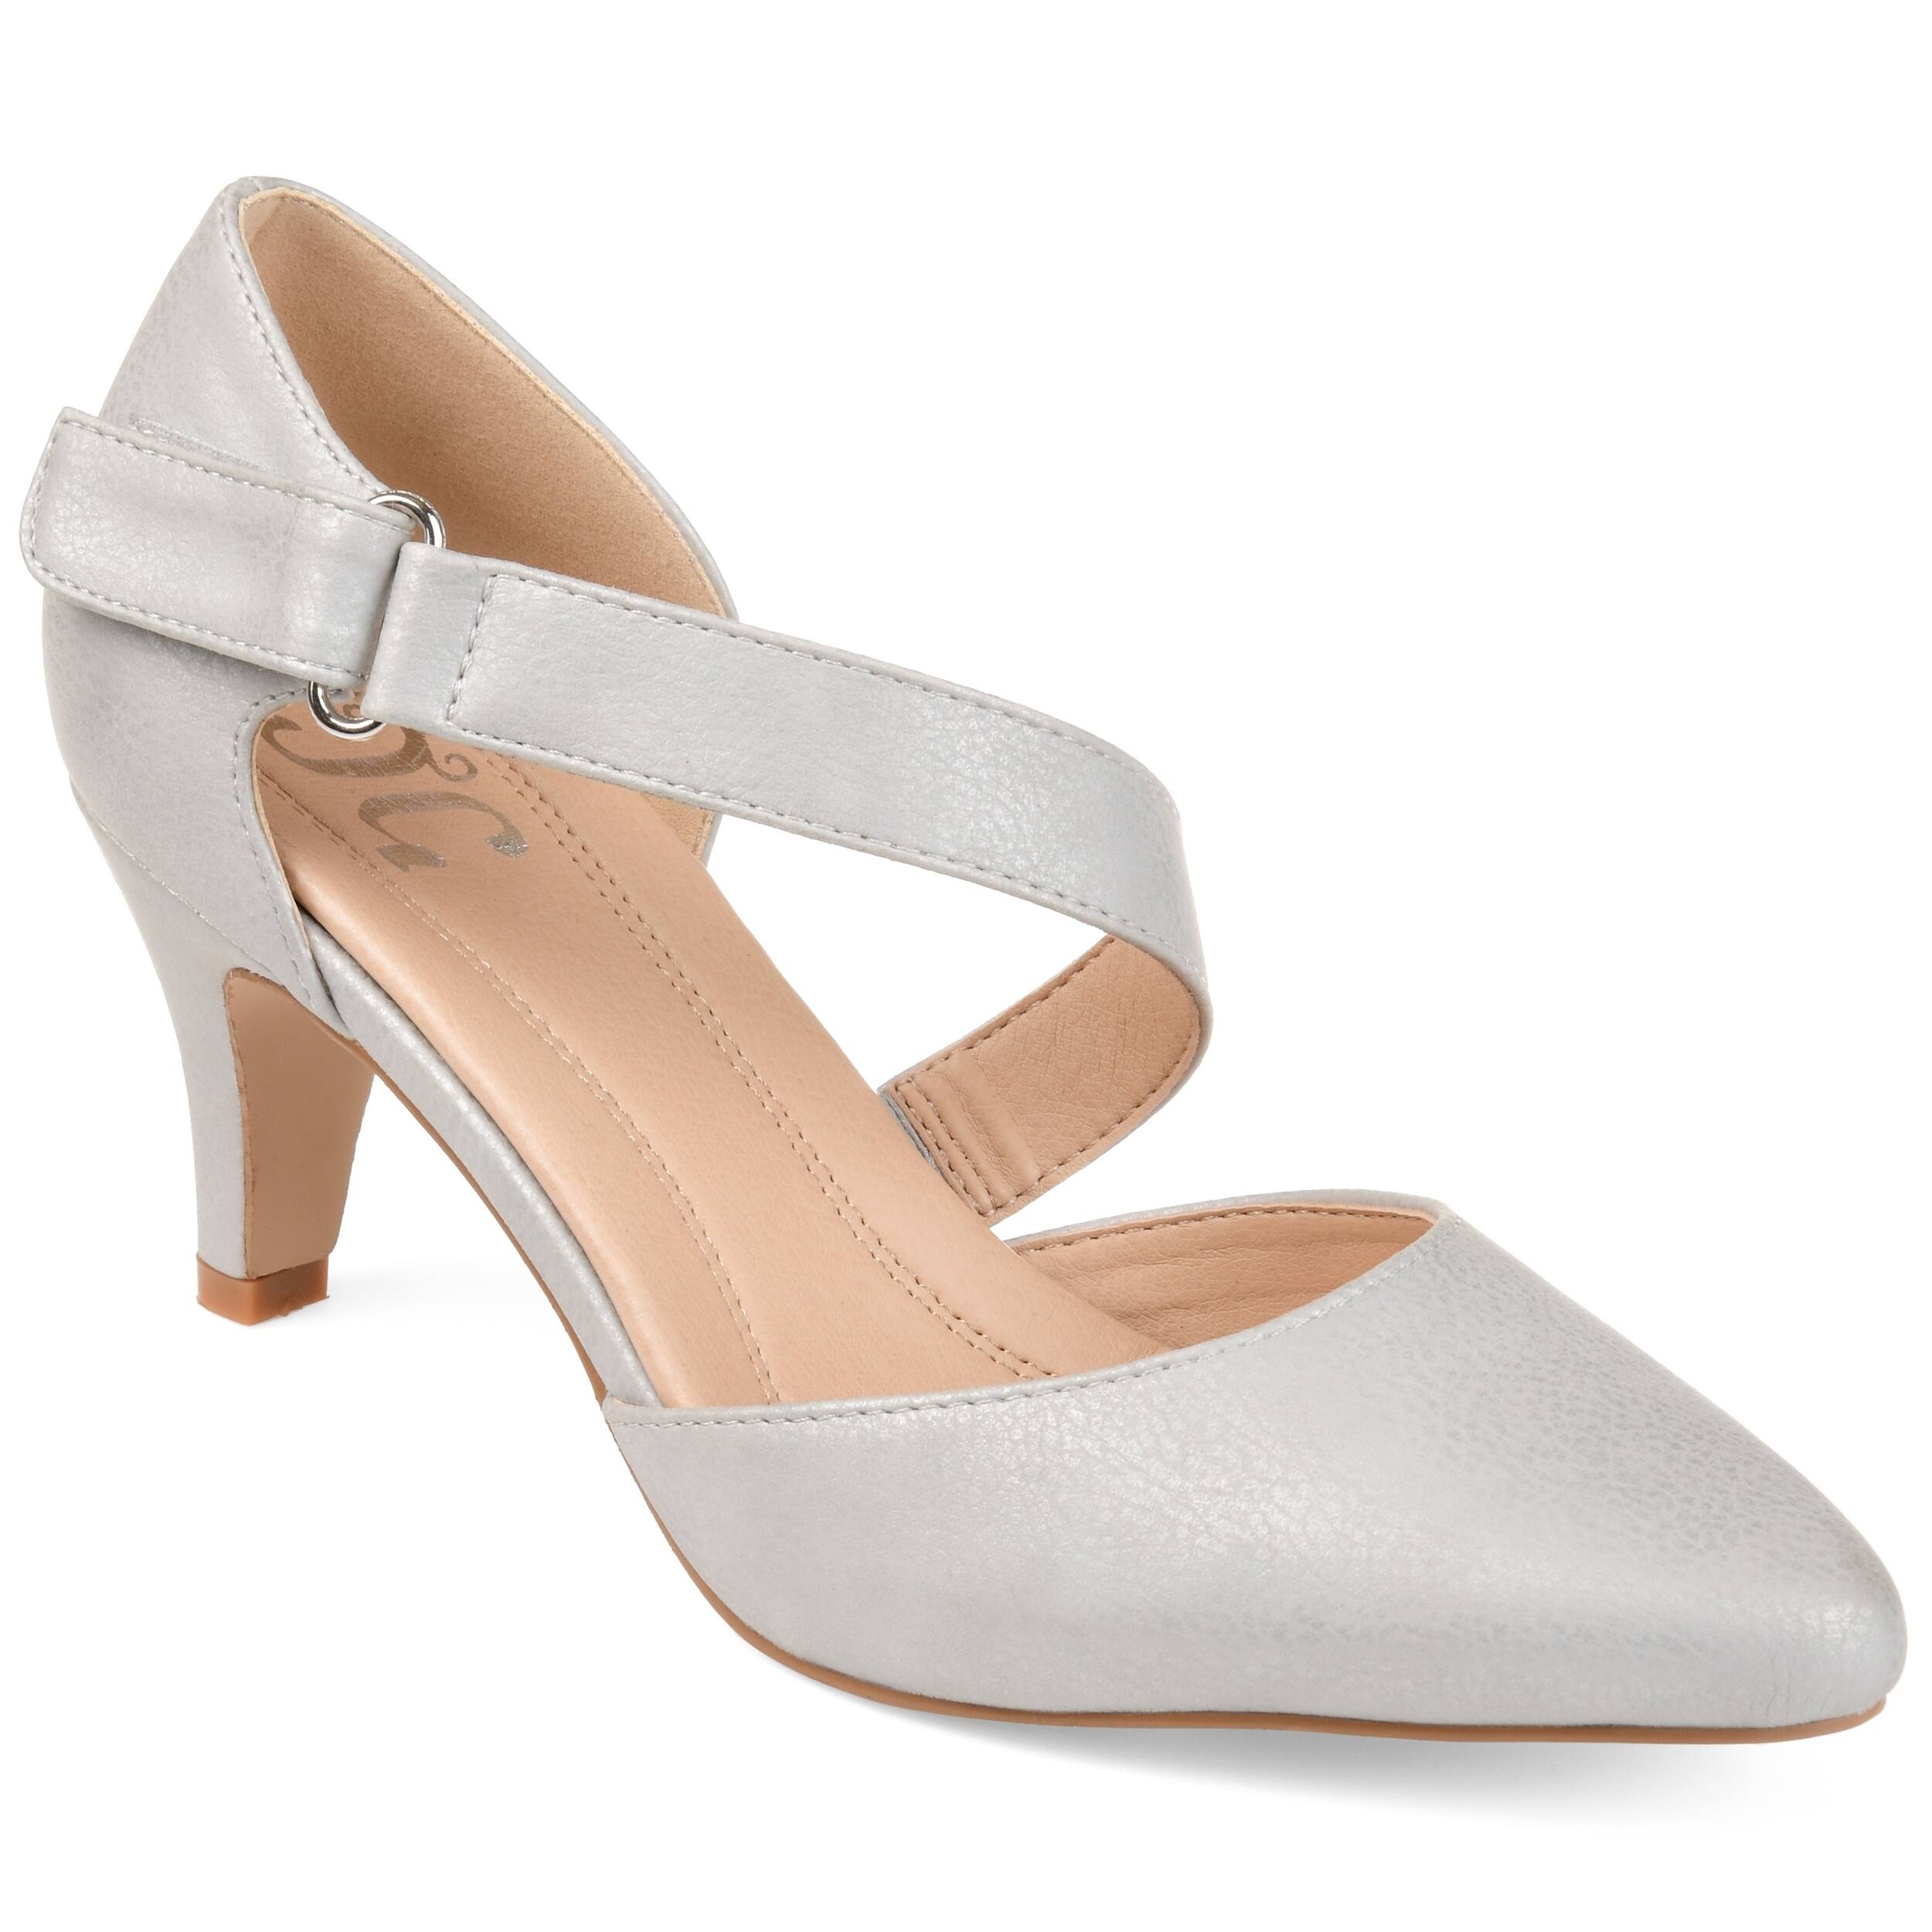 Buy Women's Heels Online at Overstock | Our Best Women's Shoes Deals